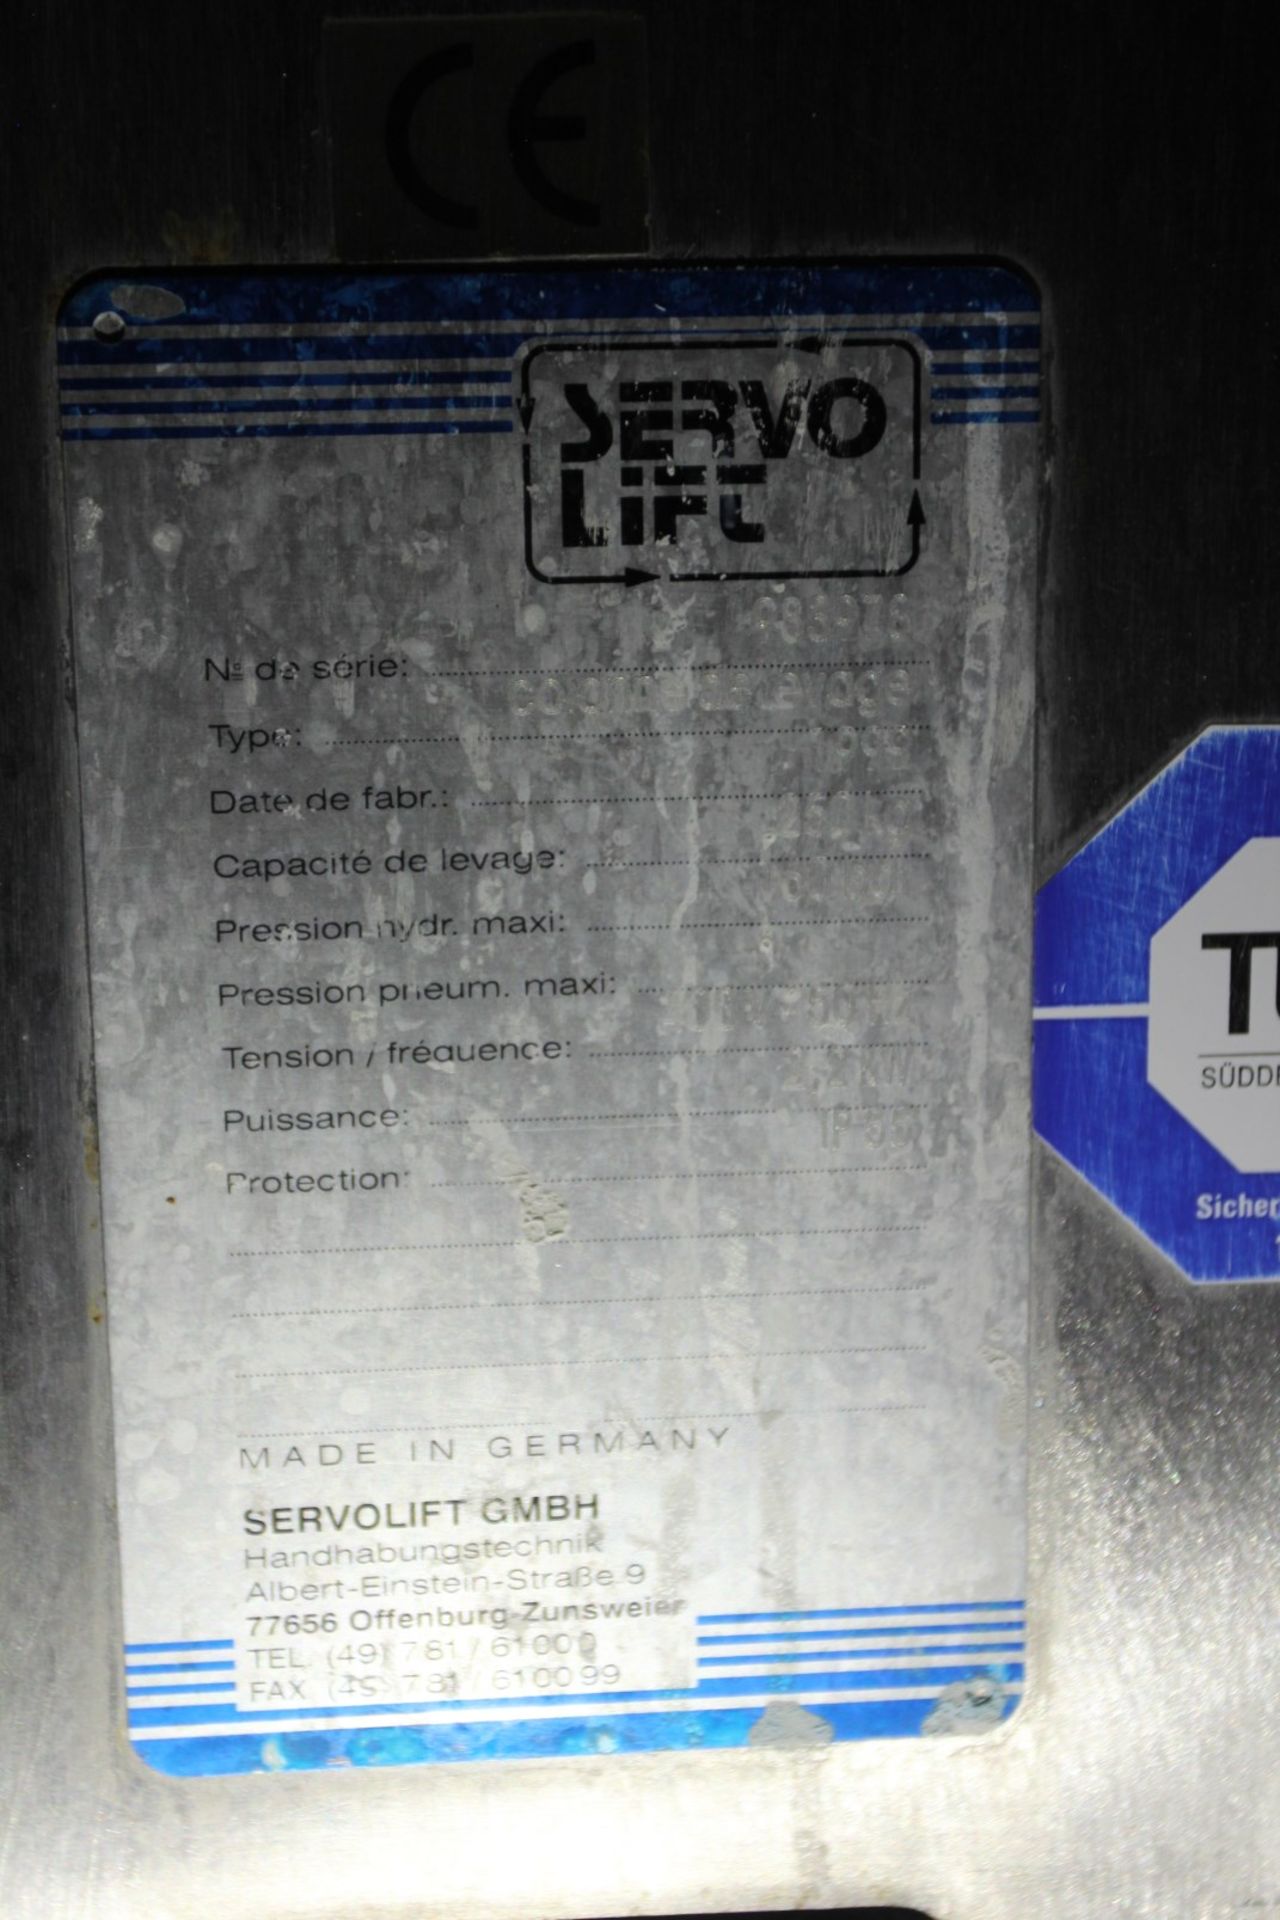 1999 Servo Lift Colonne de Levage (Lifting Column), s/n 983978, 250 kg Capacity, 160 bar Max Hyd - Bild 8 aus 8